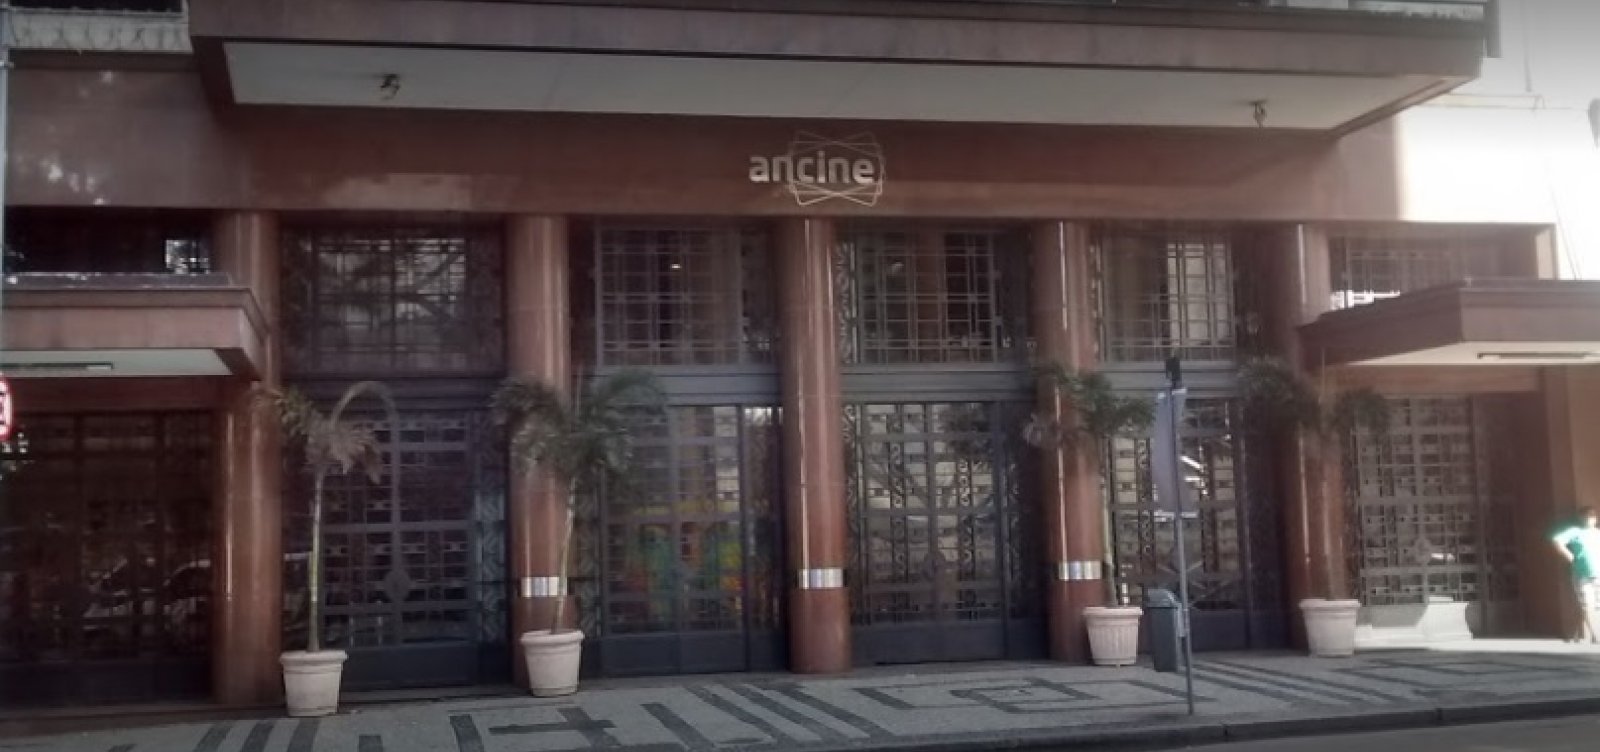 Justiça determina que Ancine retome edital de seleção censurado por conteúdo LGBTs